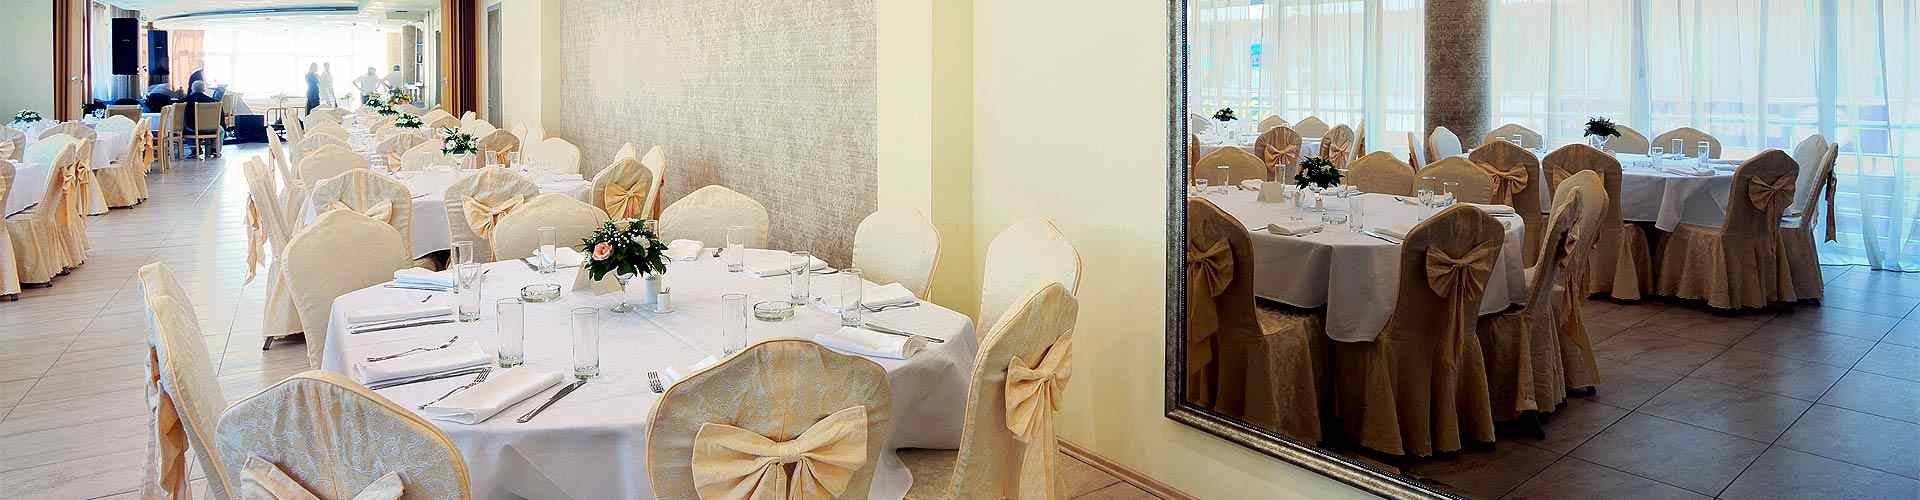 Restaurantes para bodas 2019 en Viator